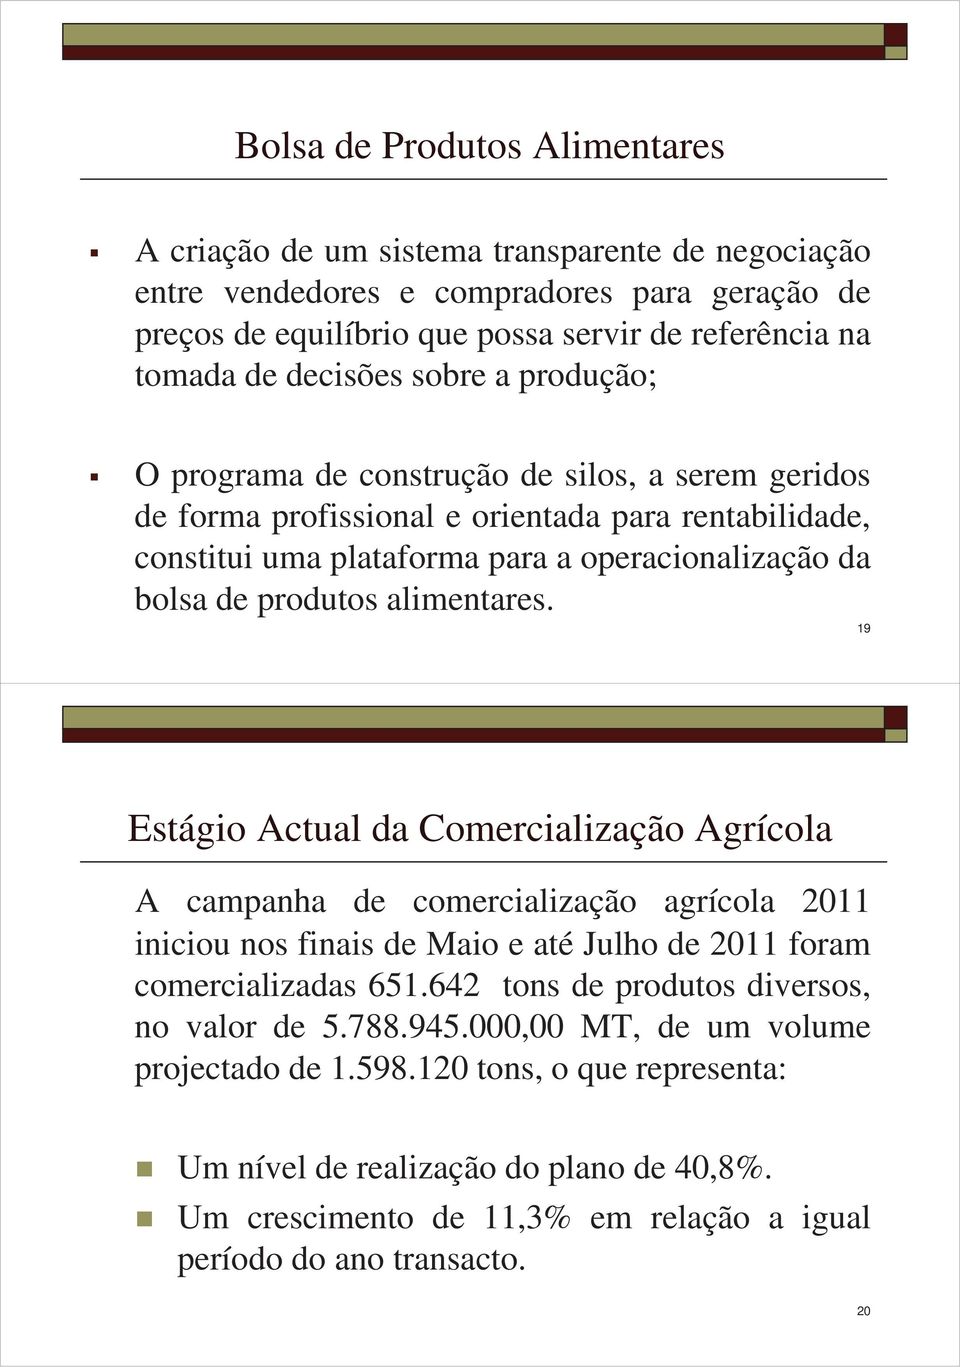 produtos alimentares. 19 Estágio Actual da Comercialização Agrícola A campanha de comercialização agrícola 2011 iniciou nos finais de Maio e até Julho de 2011 foram comercializadas 651.